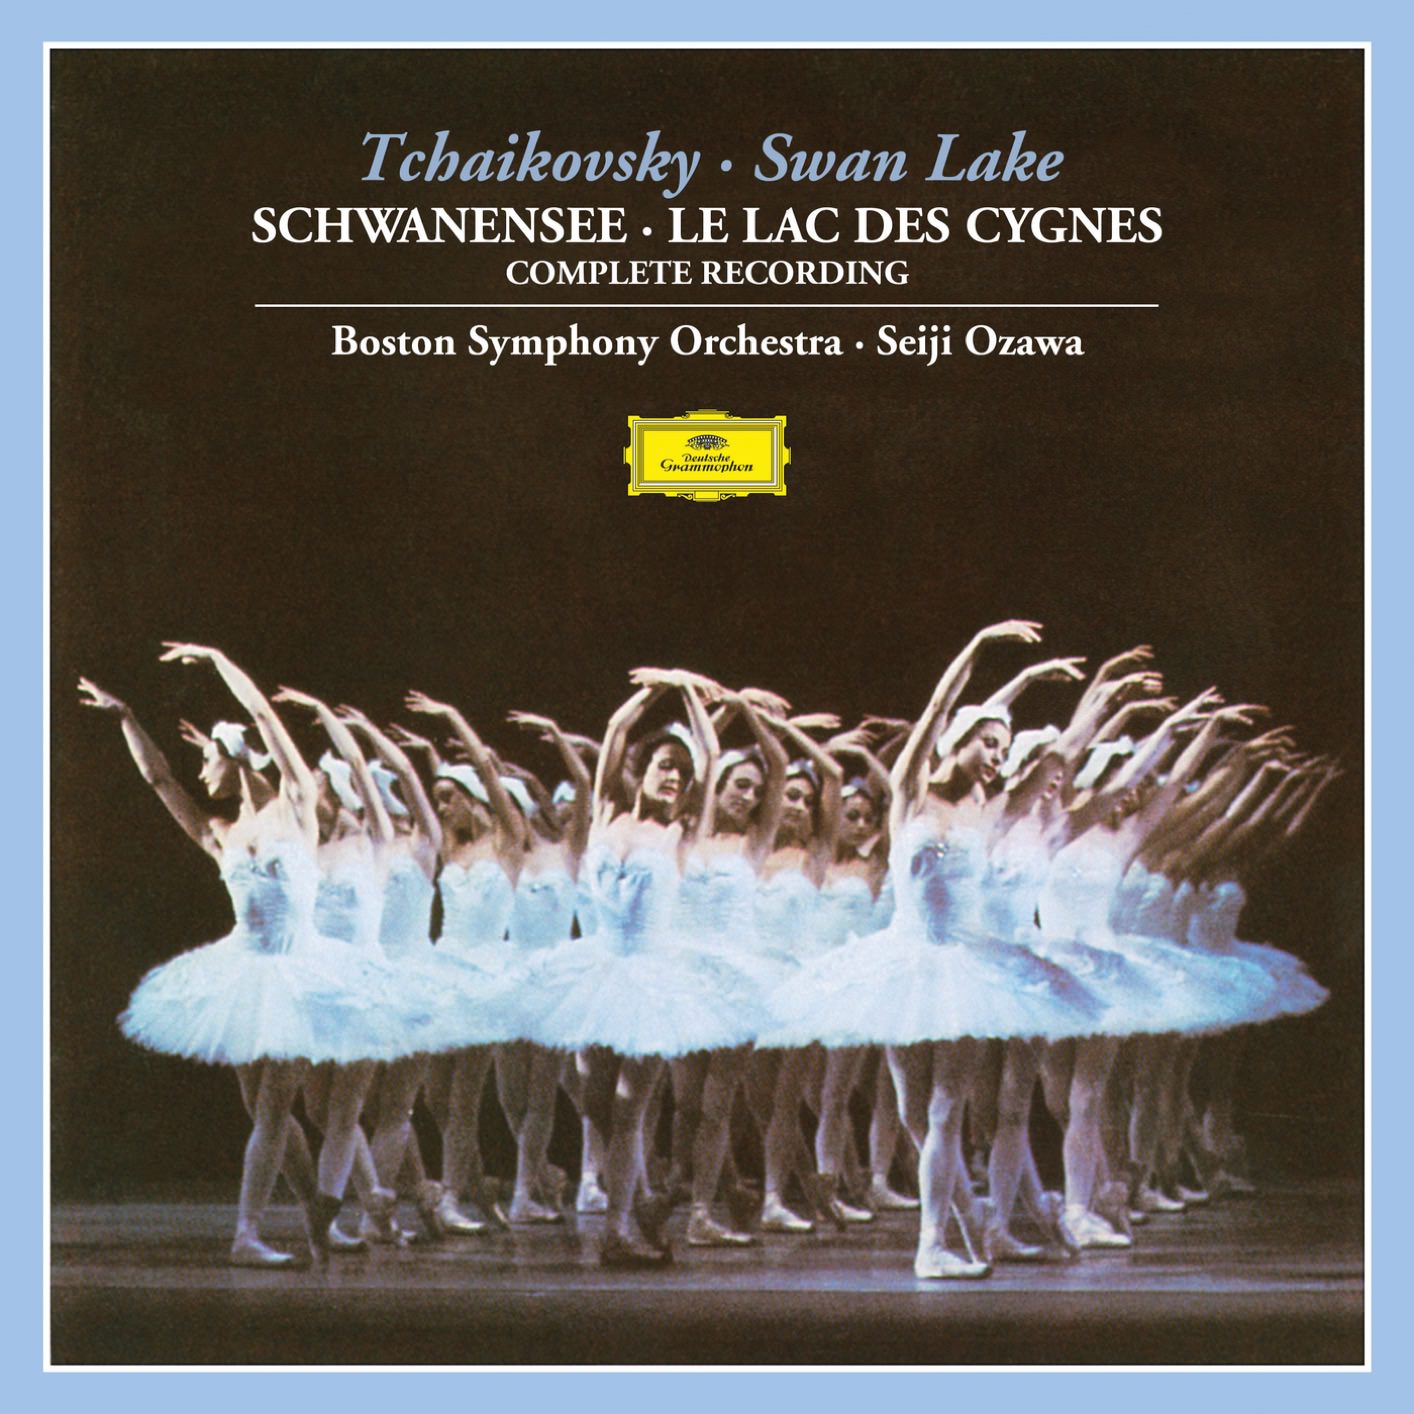 Boston Symphony Orchestra & Seiji Ozawa – Tchaikovsky: Swan Lake, Op.20, TH.12 (1979/2018) [FLAC 24bit/96kHz]